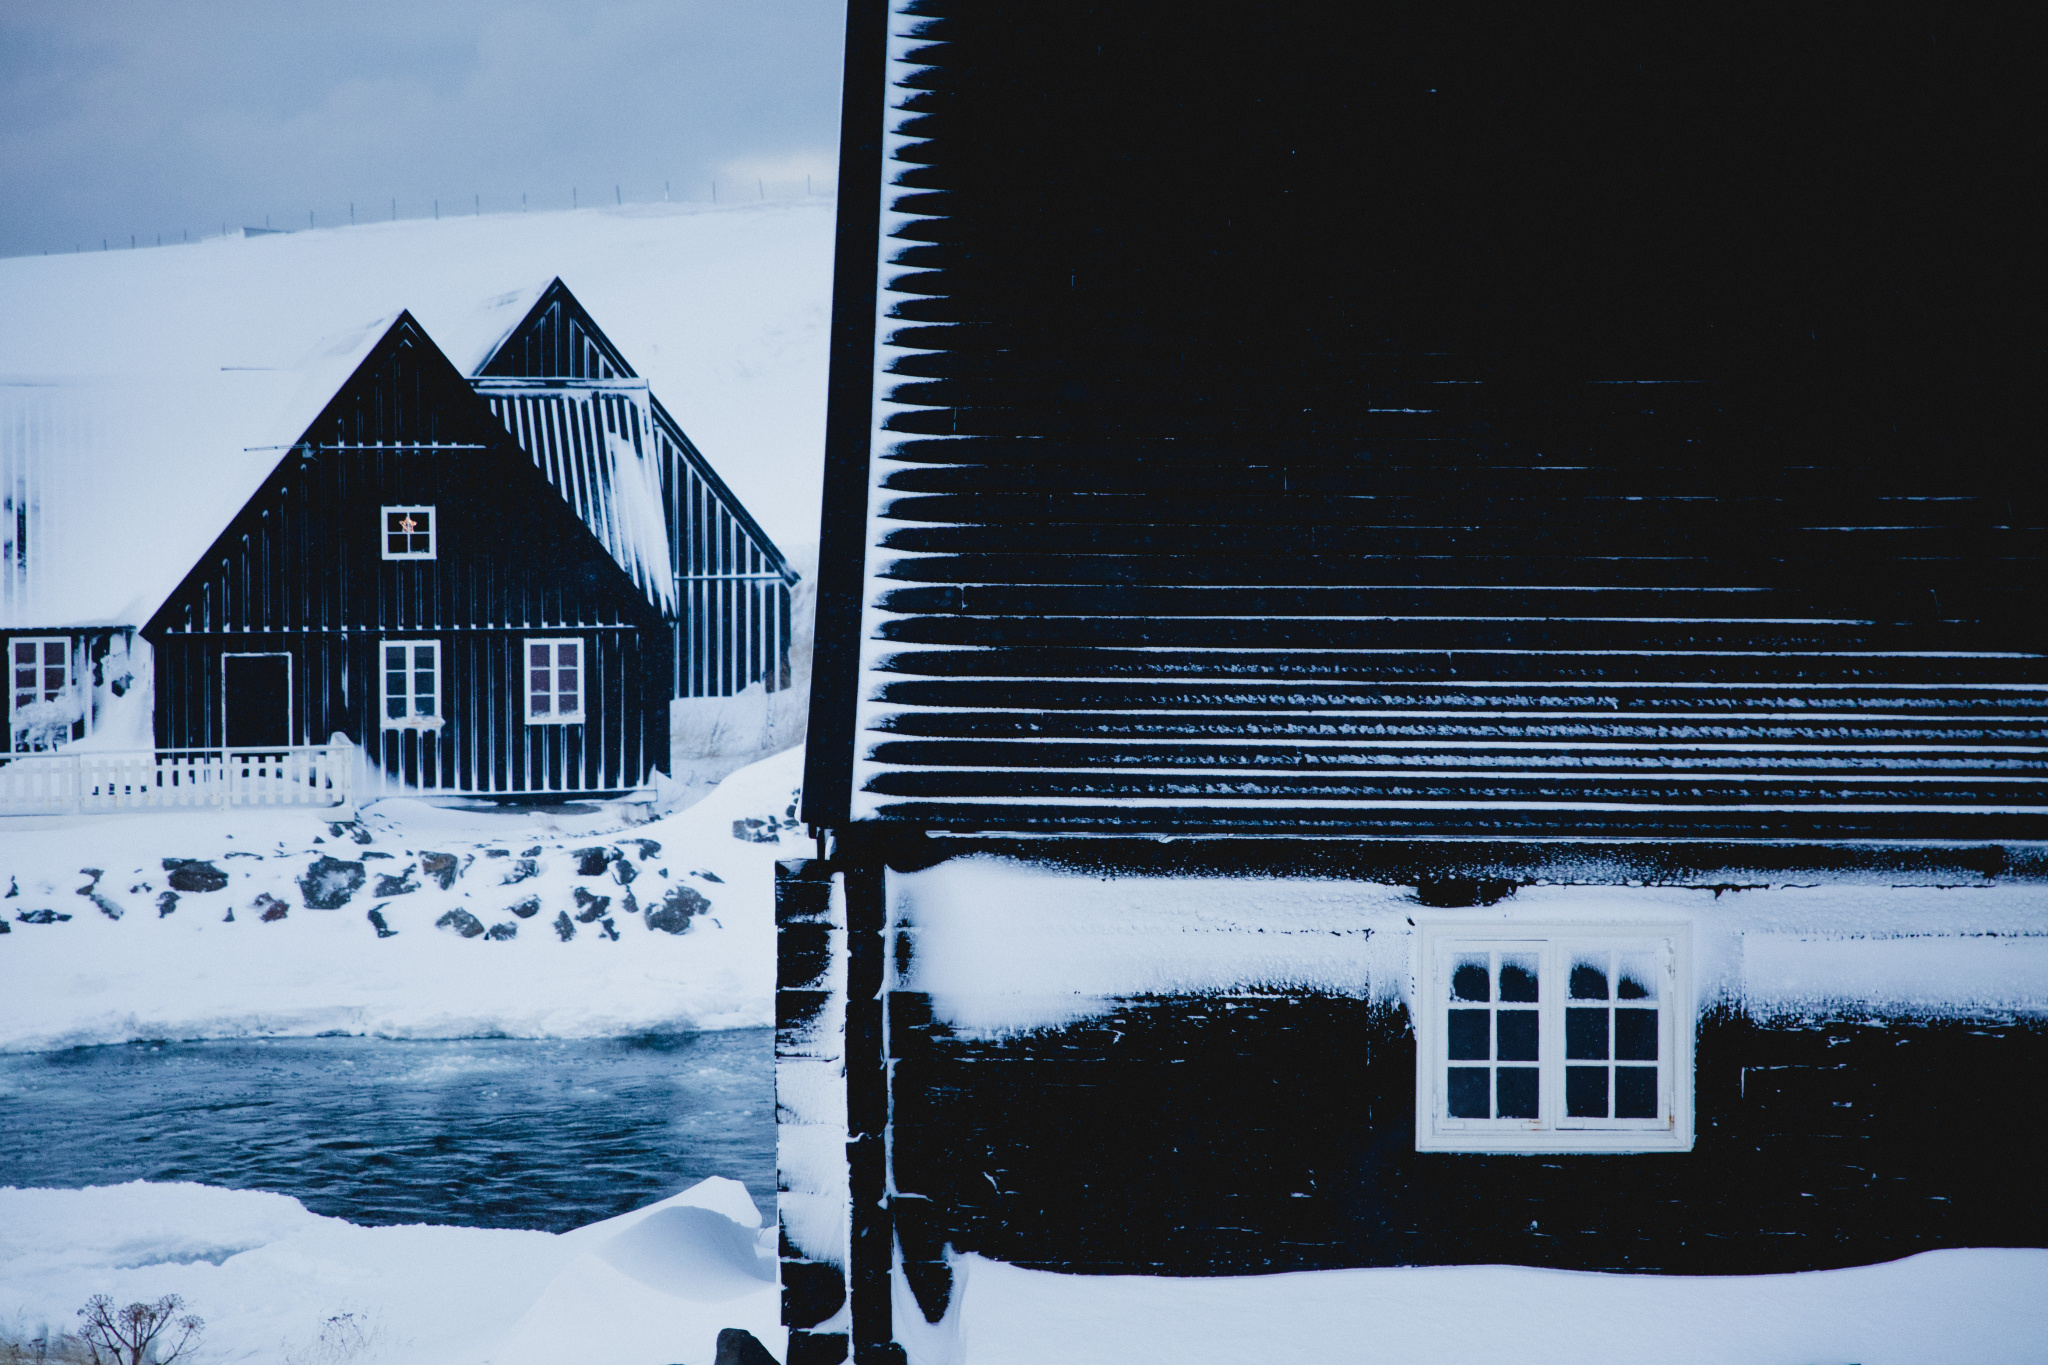 Zimní fotografické cvičení: Vytvořte zimní fotografickou sérii